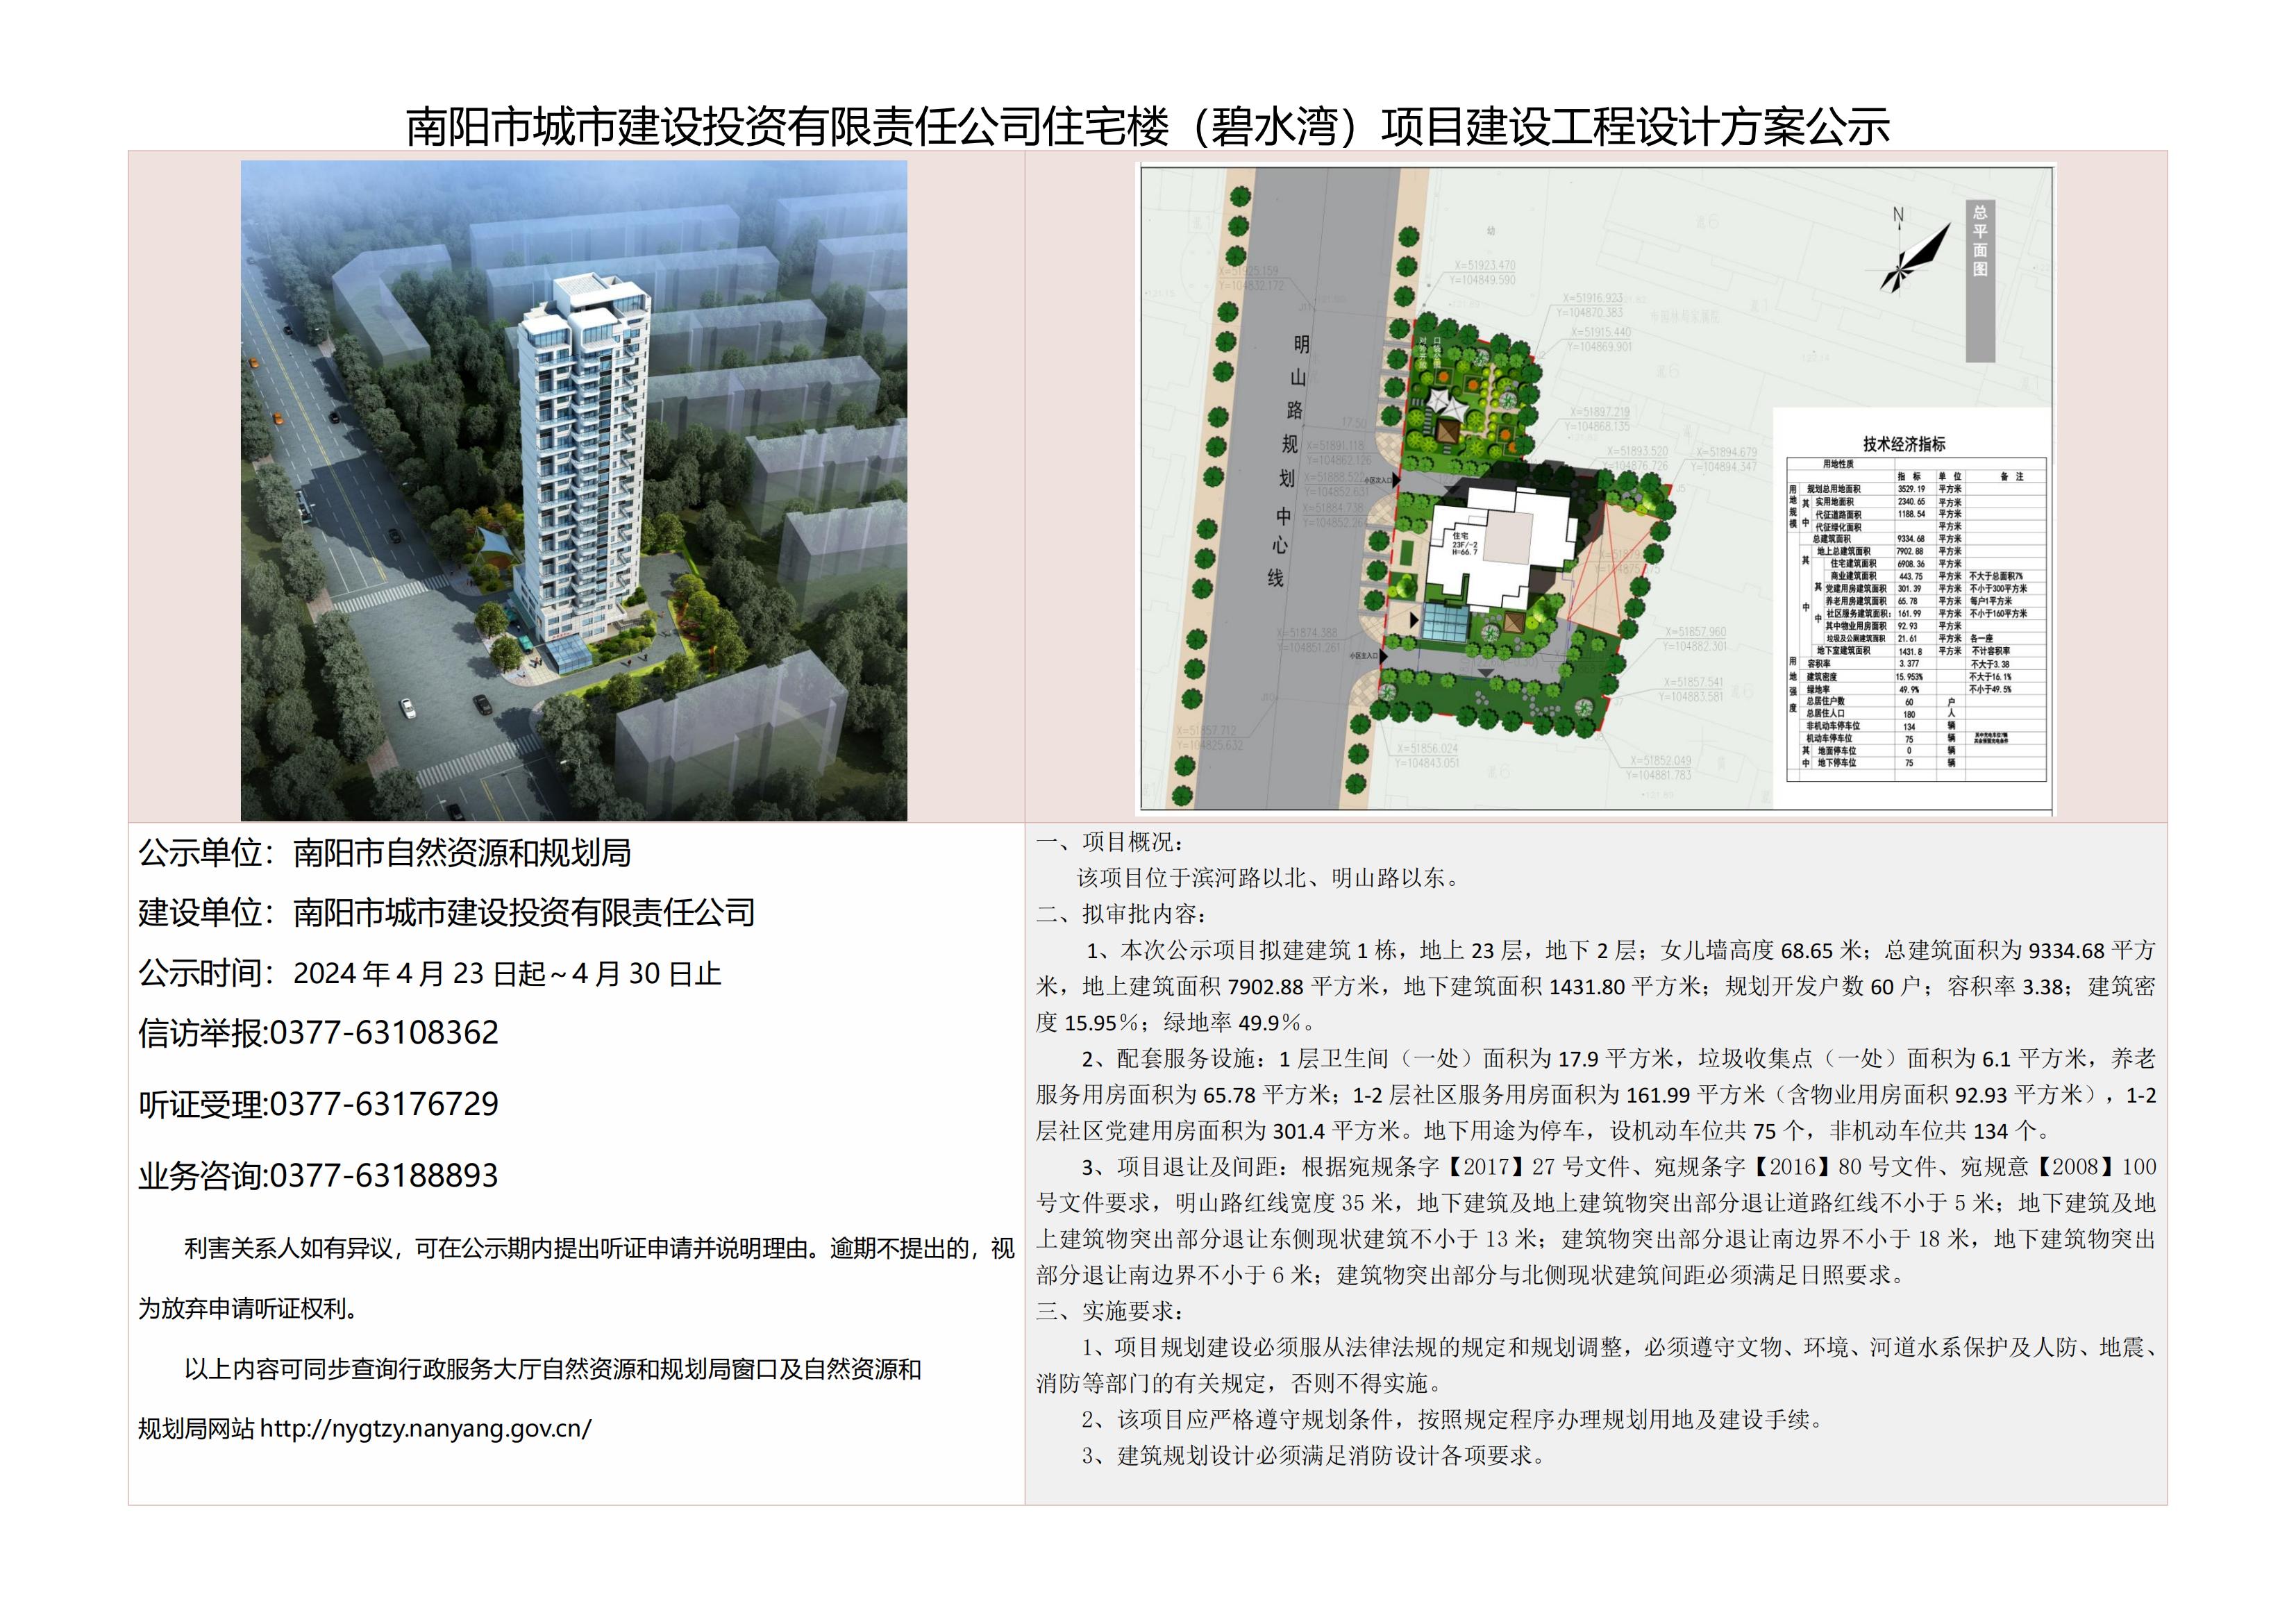 南阳市城市建设投资有限责任公司住宅楼（碧水湾）项目建设工程设计方案公示